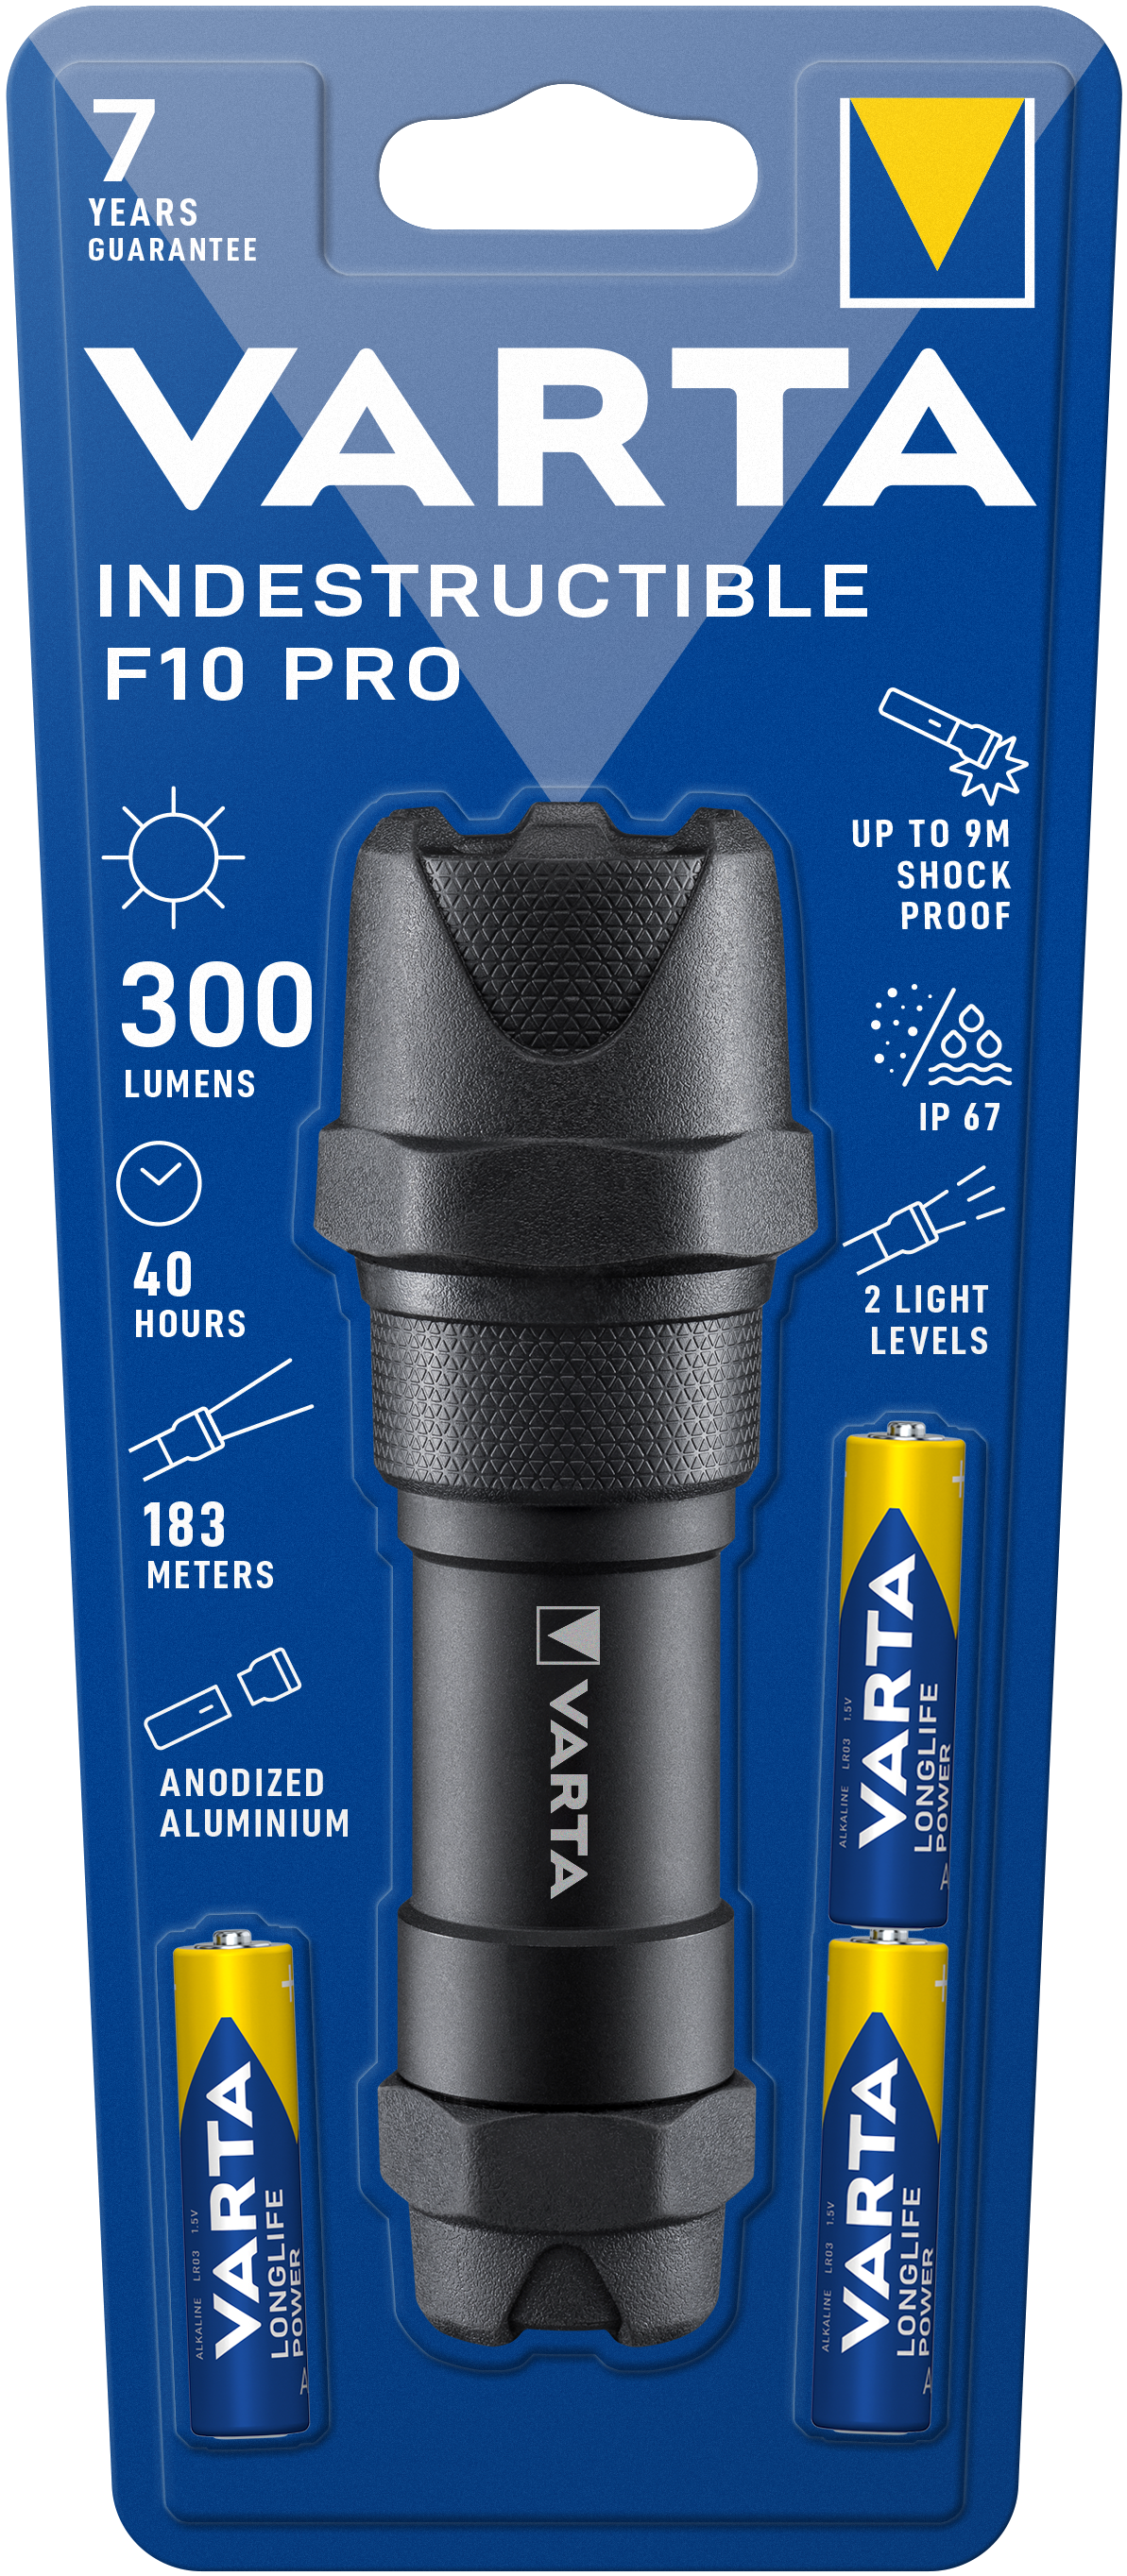 VARTA Indestructible F10 Pro Taschenlampe